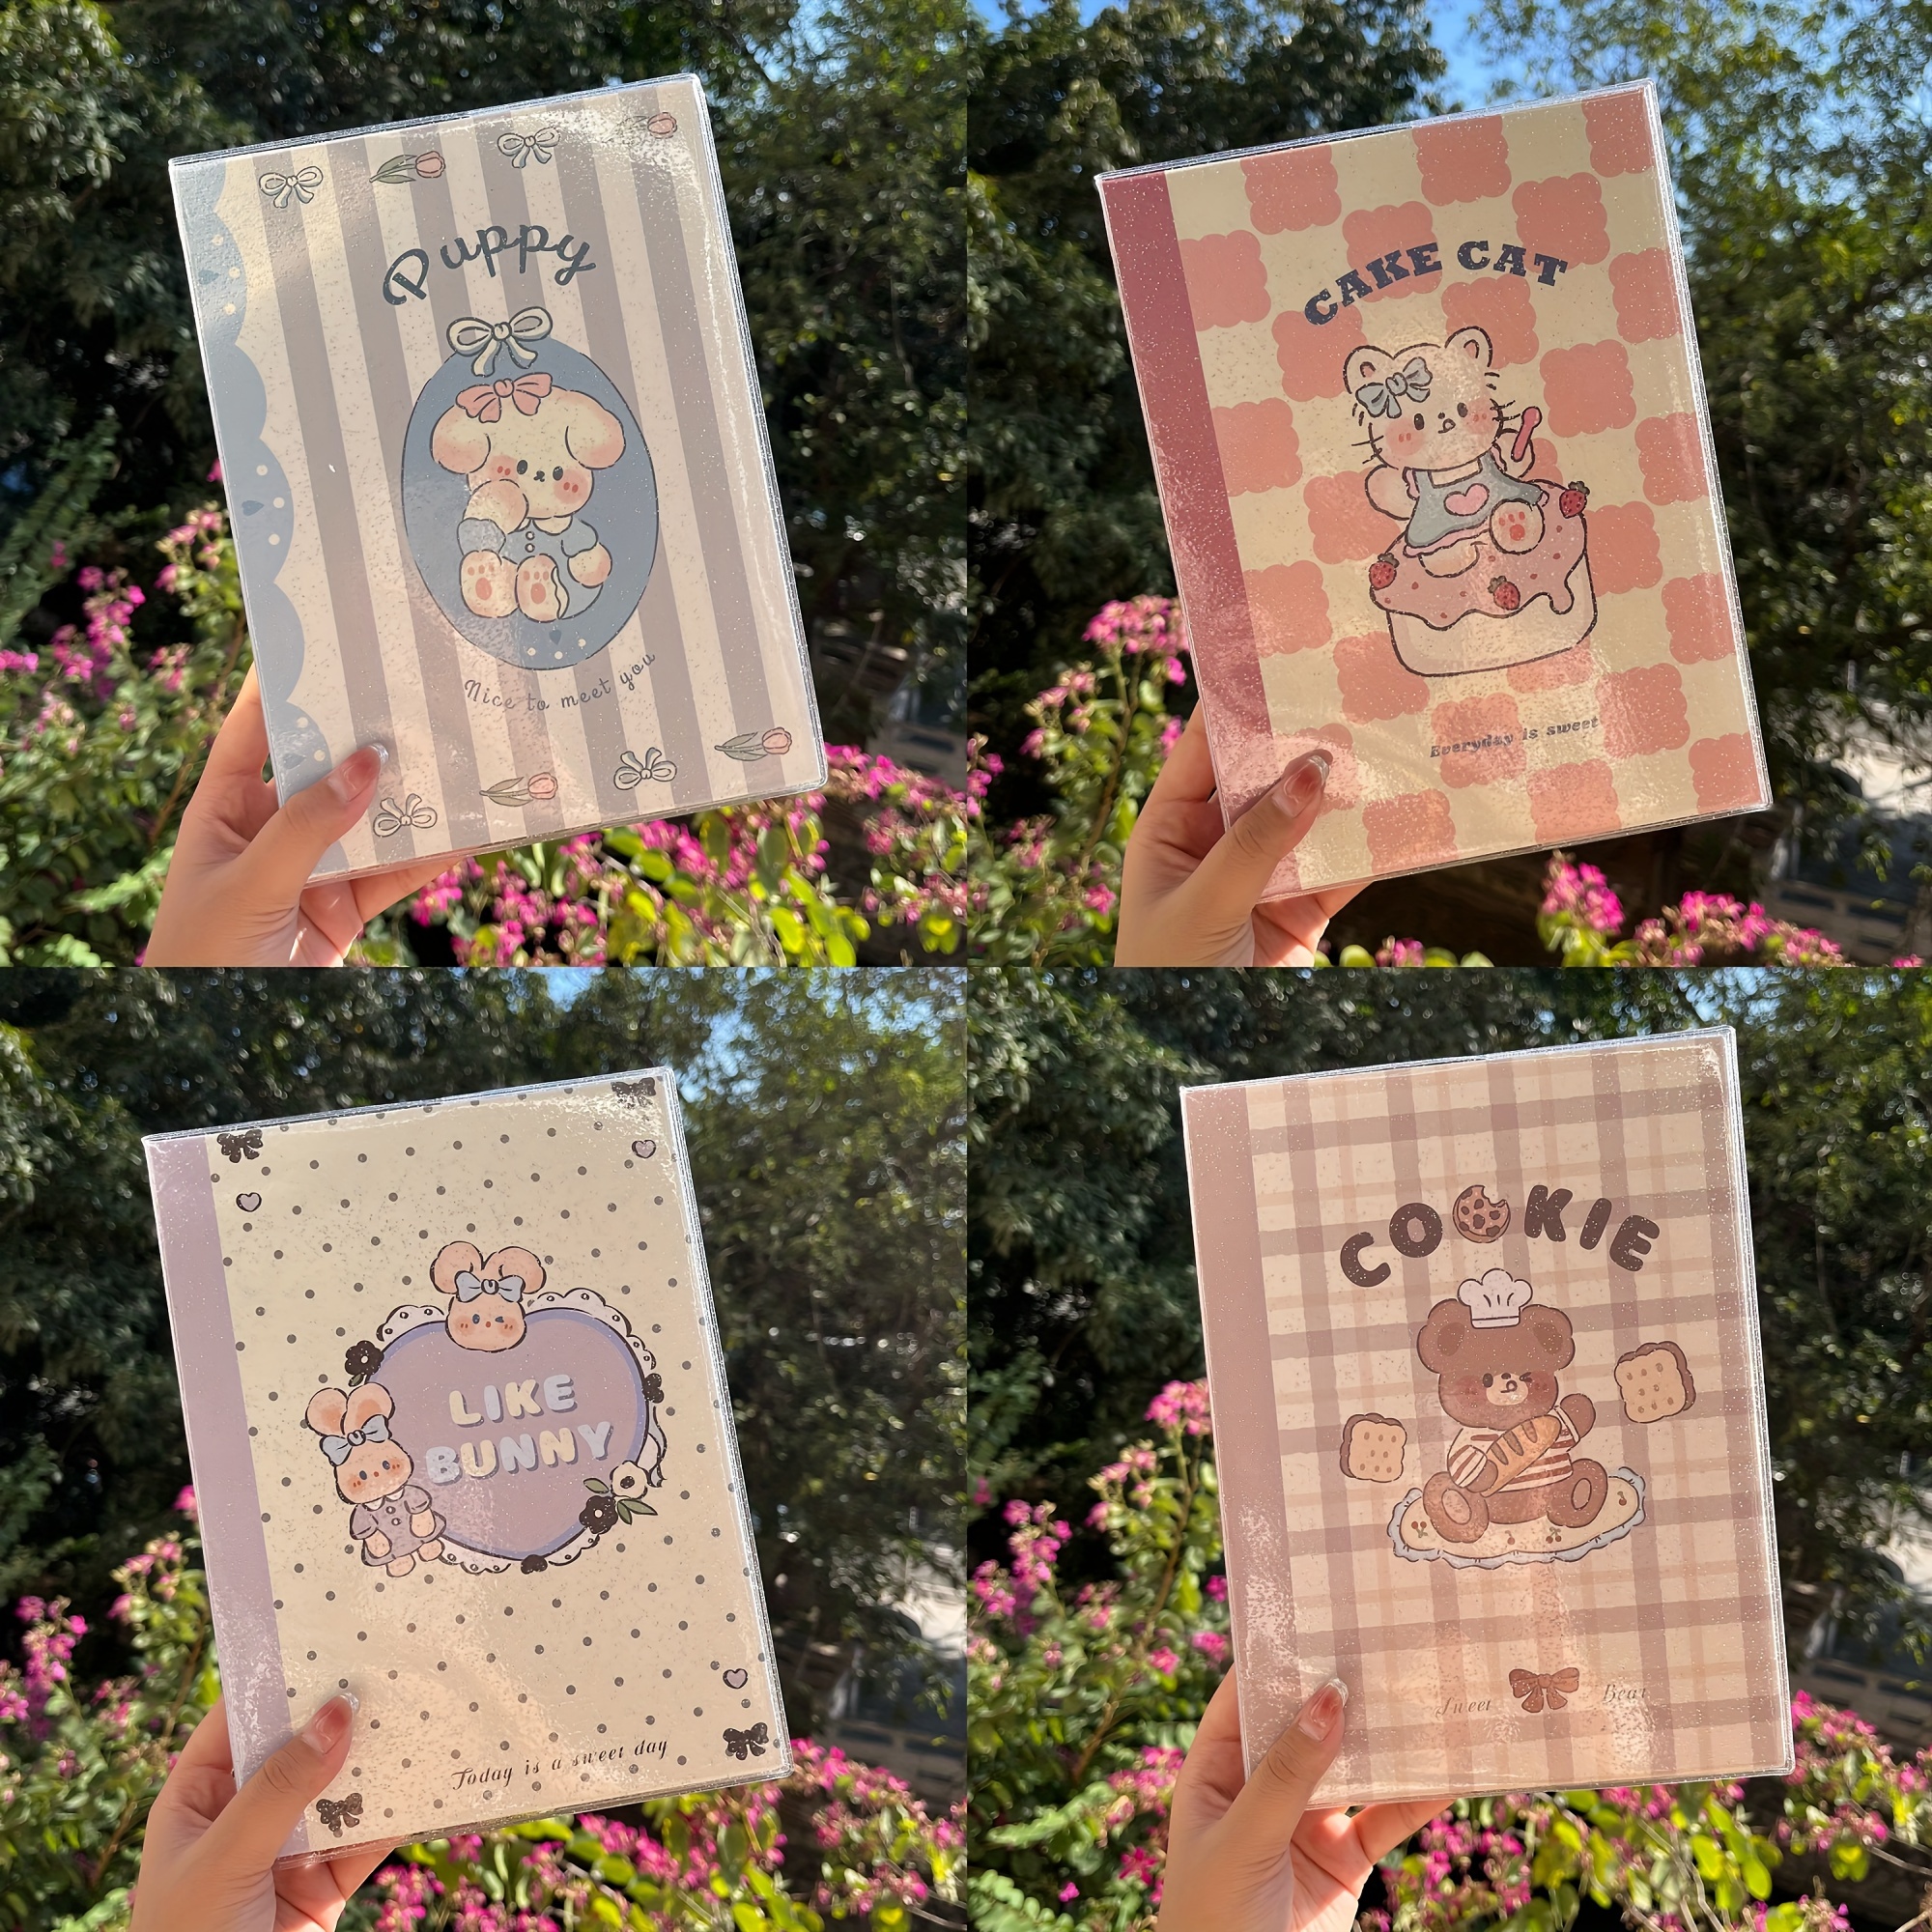 Cute Cartoon Bear Rabbit Stickers - 50 Sheets Kawaii Coil Sticker Book Pet Transparent Bunny Journaling Scrapbook Clipping Supplies Decals Material